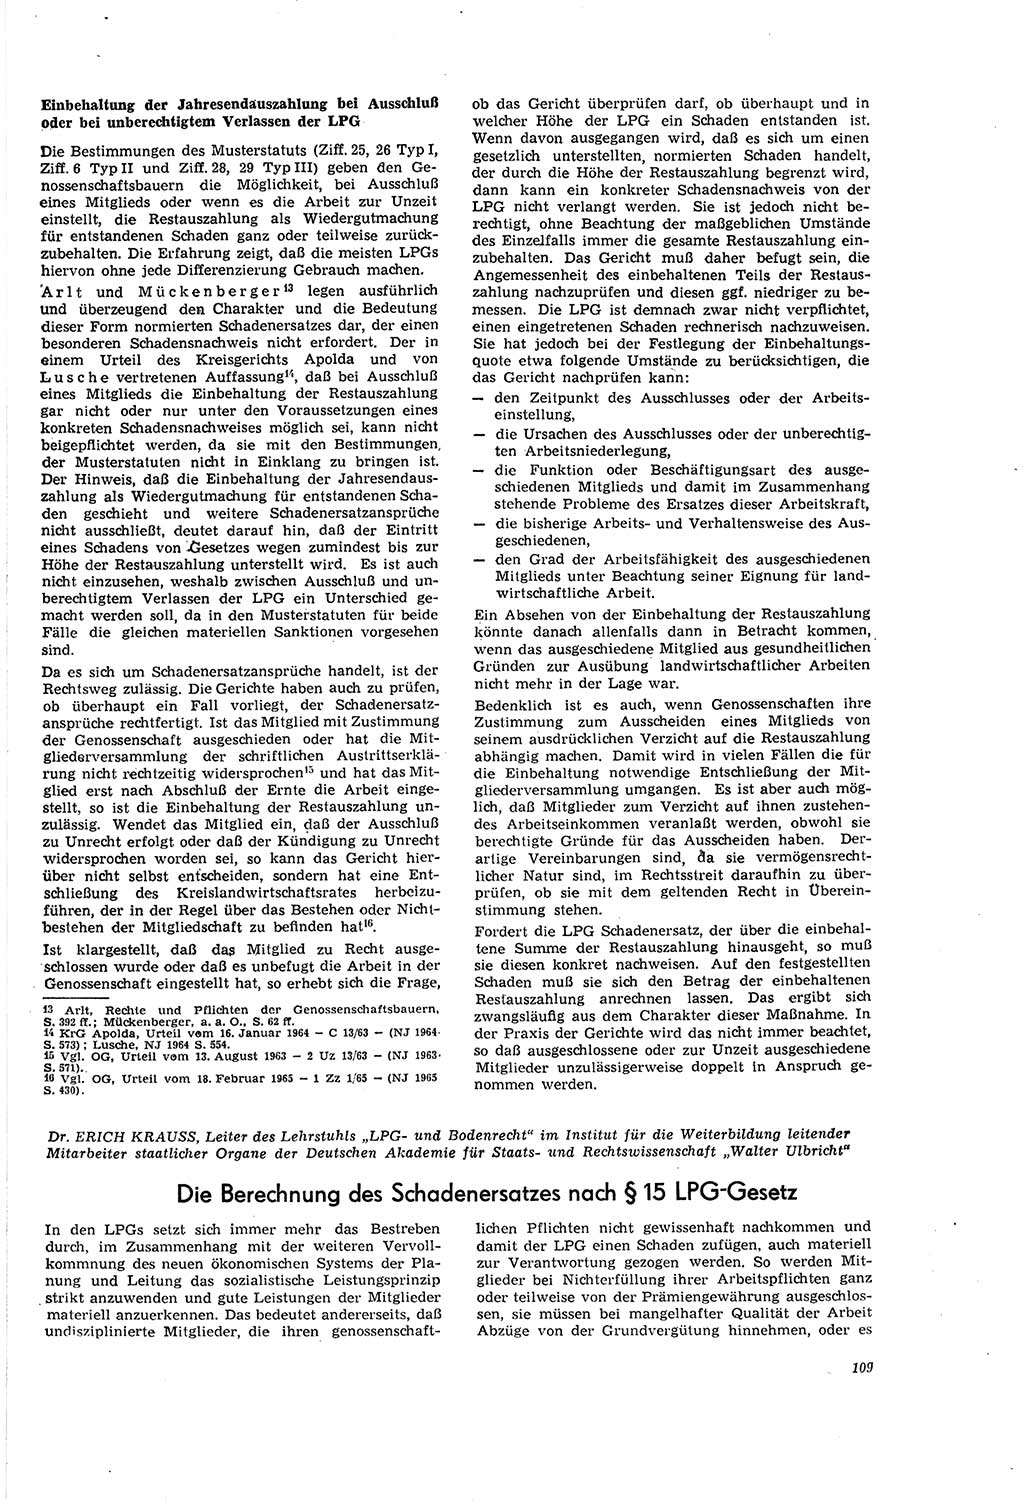 Neue Justiz (NJ), Zeitschrift für Recht und Rechtswissenschaft [Deutsche Demokratische Republik (DDR)], 20. Jahrgang 1966, Seite 109 (NJ DDR 1966, S. 109)